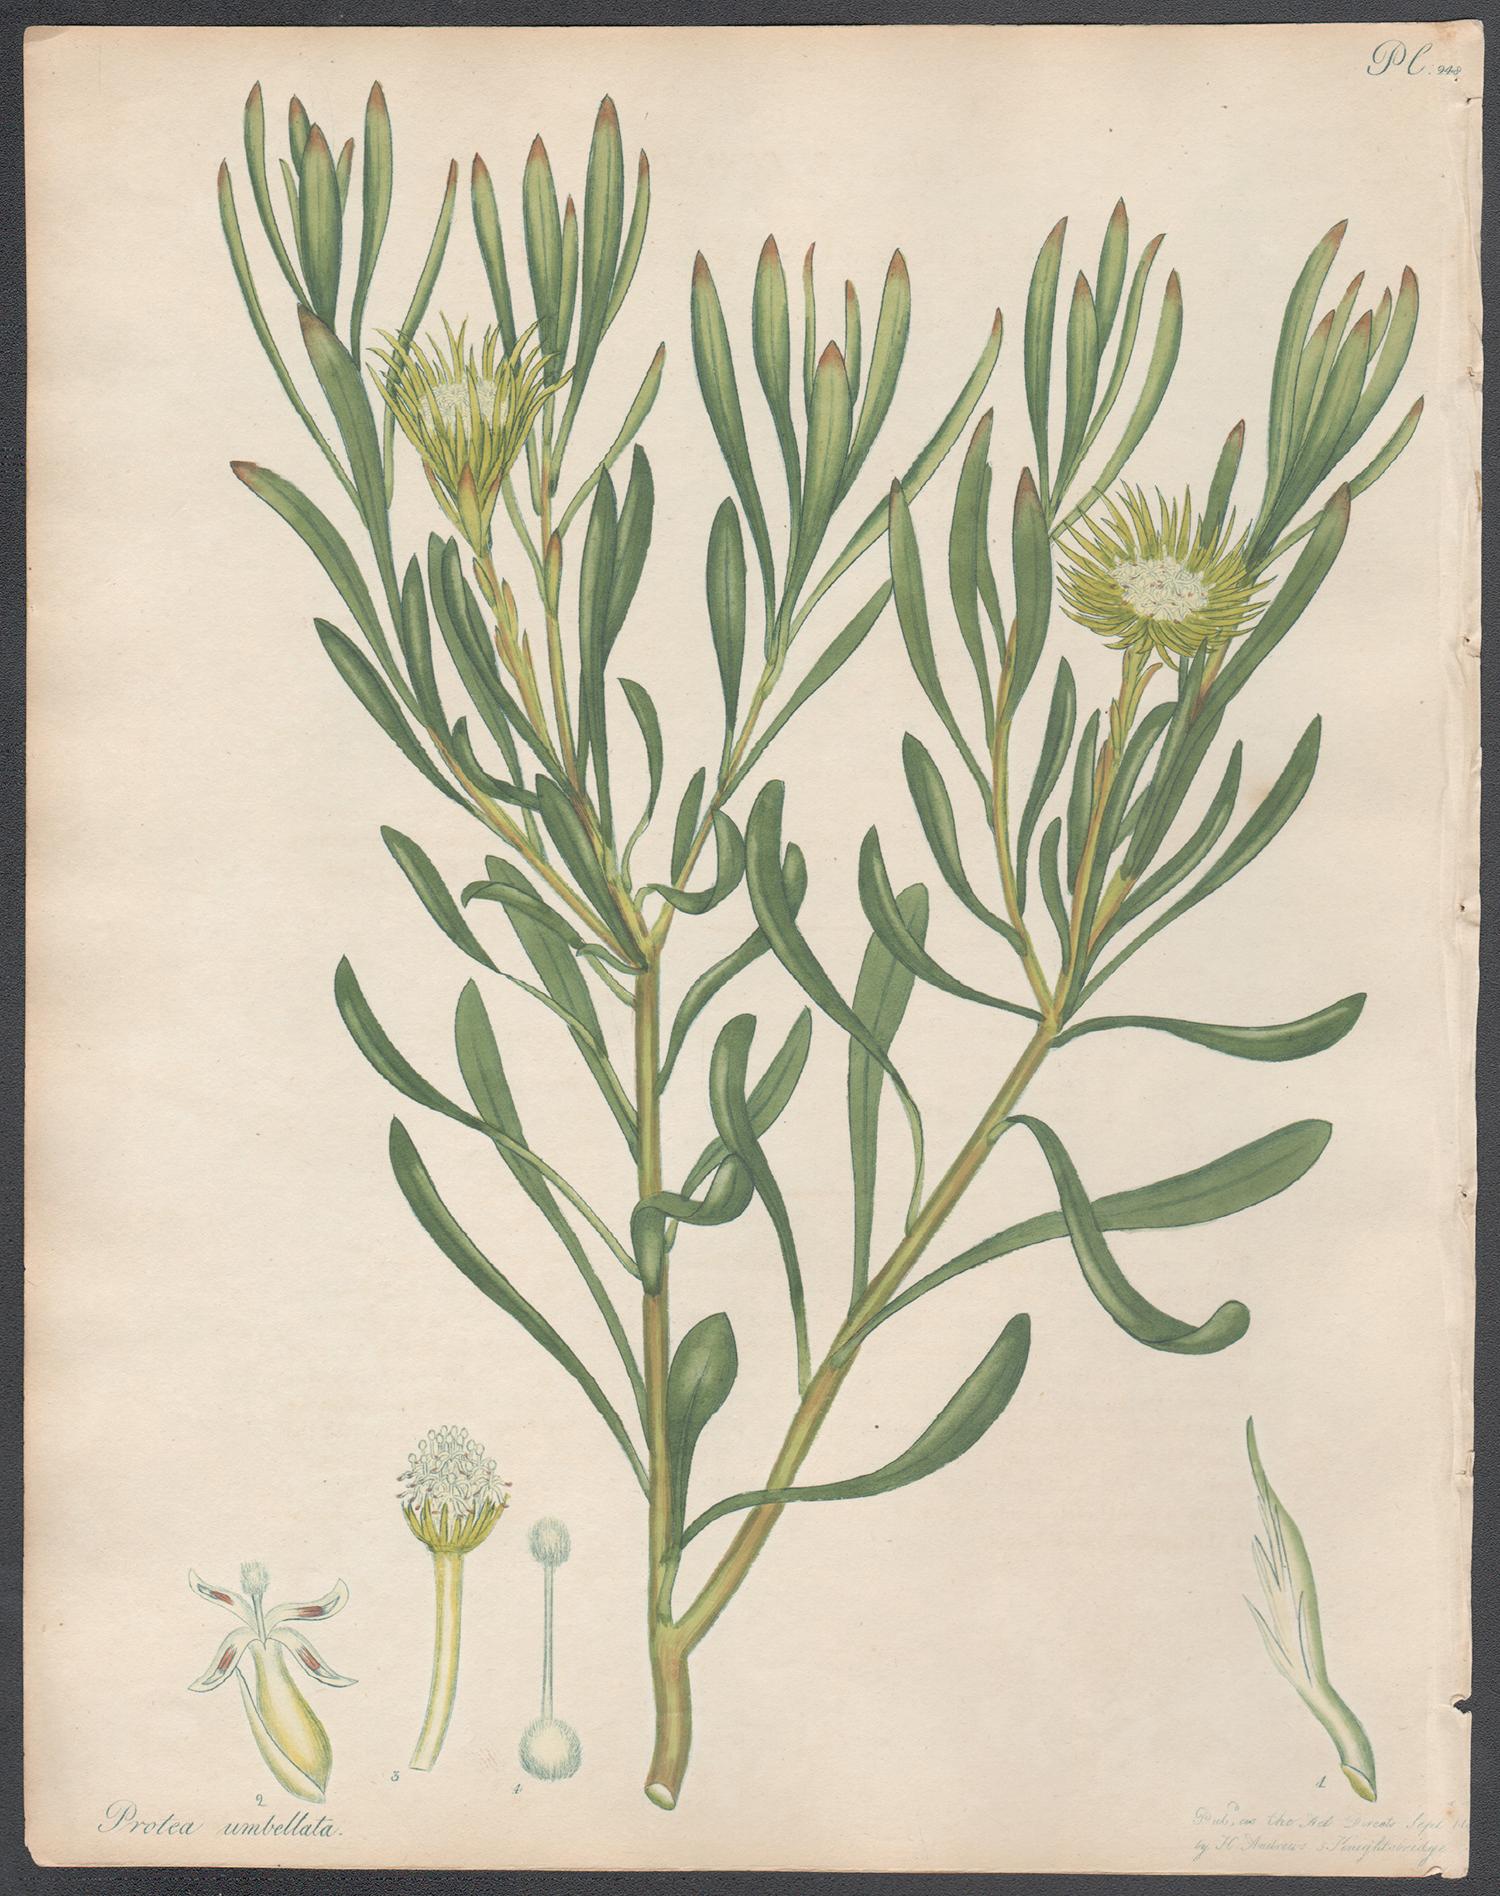 Henry C Andrews Still-Life Print - Protea Umbellata - Umbellated Protea, Henry Andrews botanical engraving